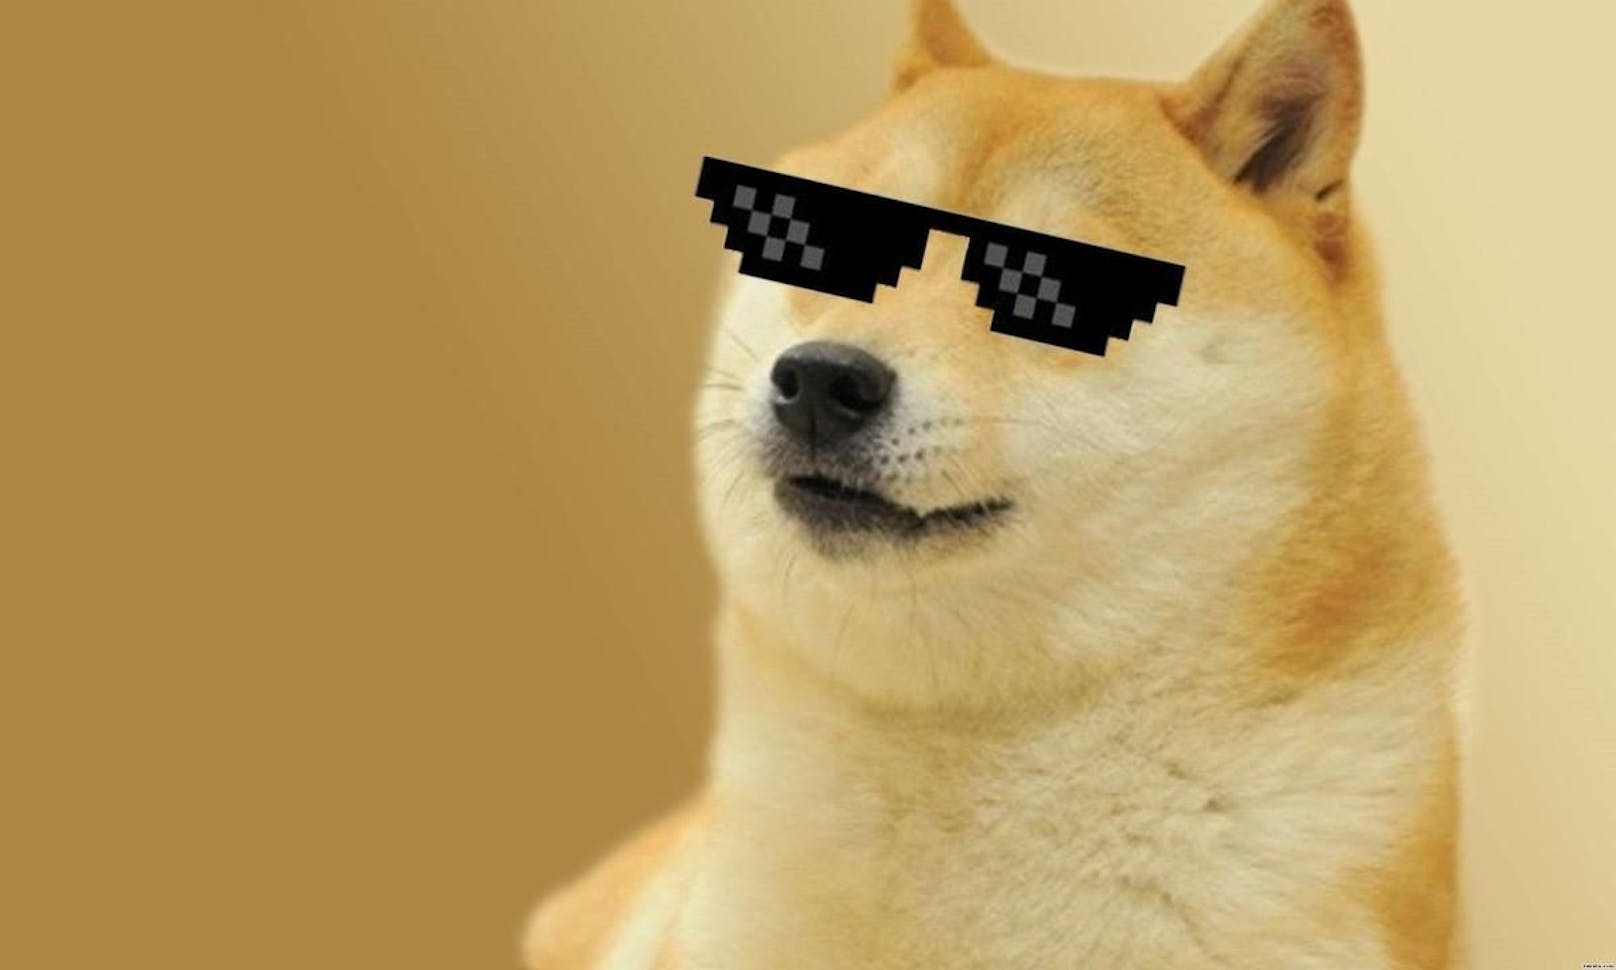 Doge ist damit das teuerste NFT-Meme, das verkauft wurde, allerdings nicht das teuerste NFT überhaupt.